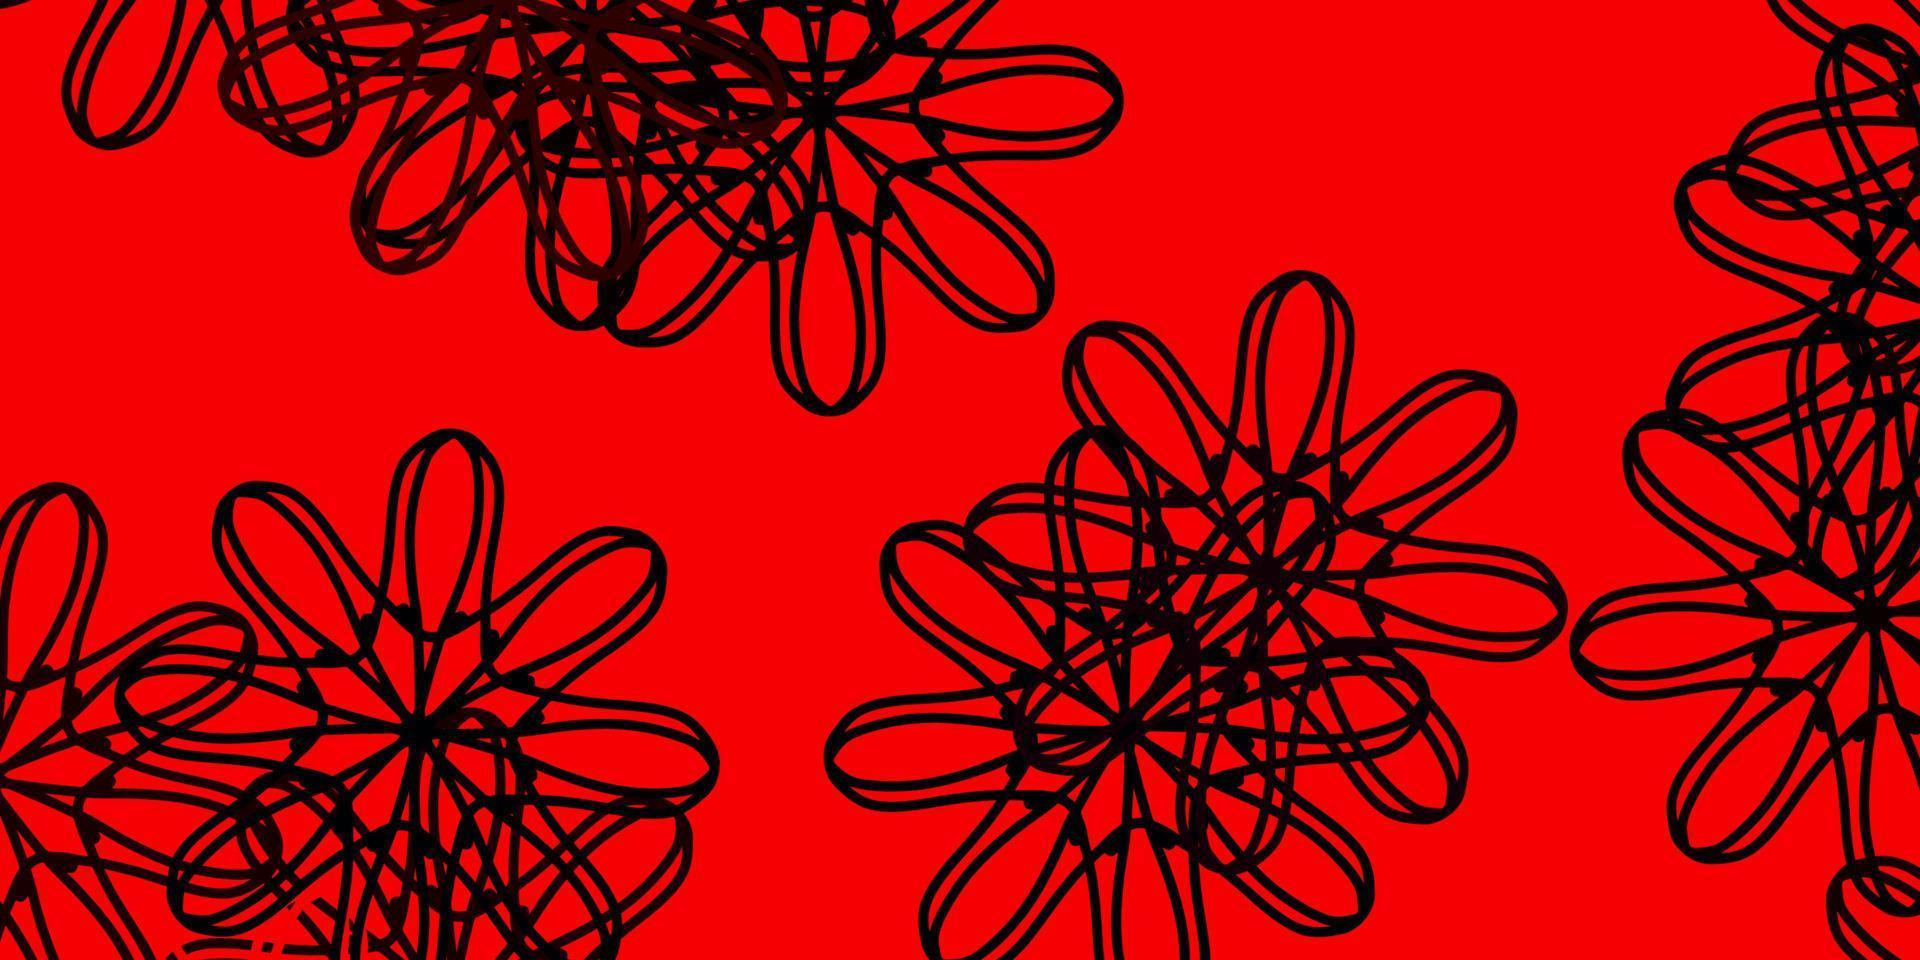 textura de doodle de vetor vermelho claro com flores.